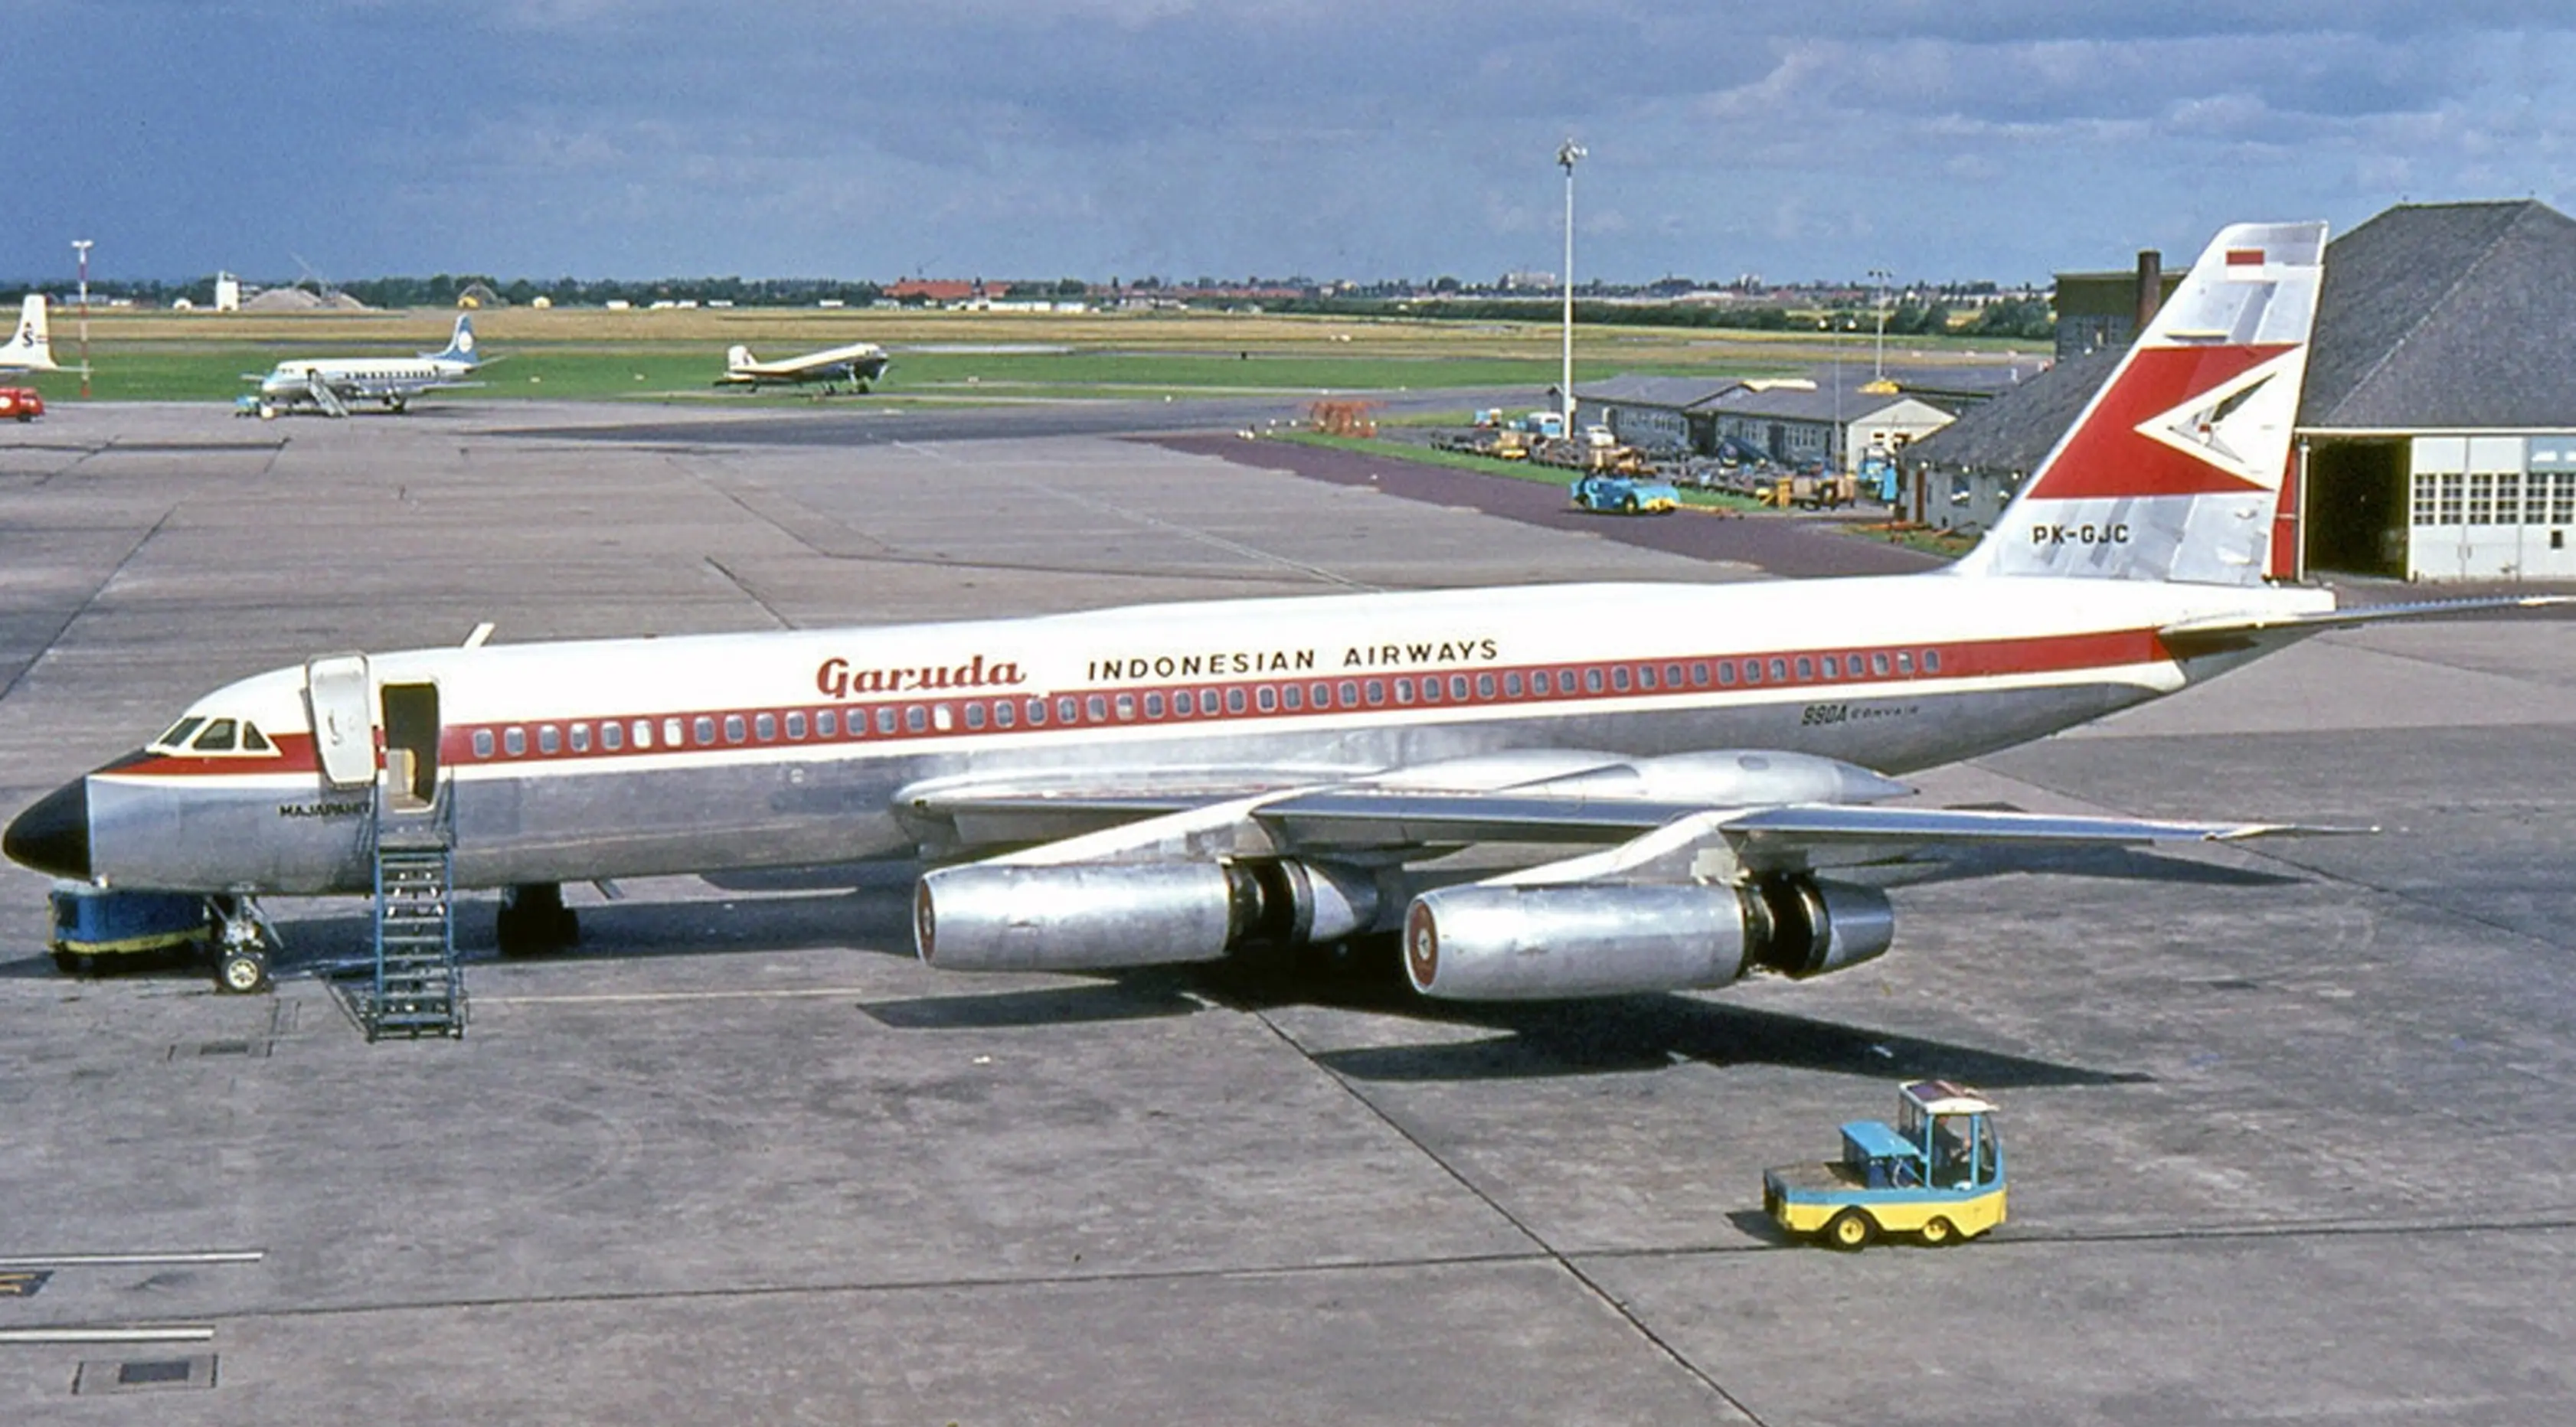 Pesawat Garuda Indonesia saat melakukan aktifitas penerbangan di Bandar Udara Kemayoran, pada tahun 1984 pemerintah memindahkan operasional penerbangan ke Bandar Udara Internasional Soekarno Hatta .(livedoor.blogimg.jp)